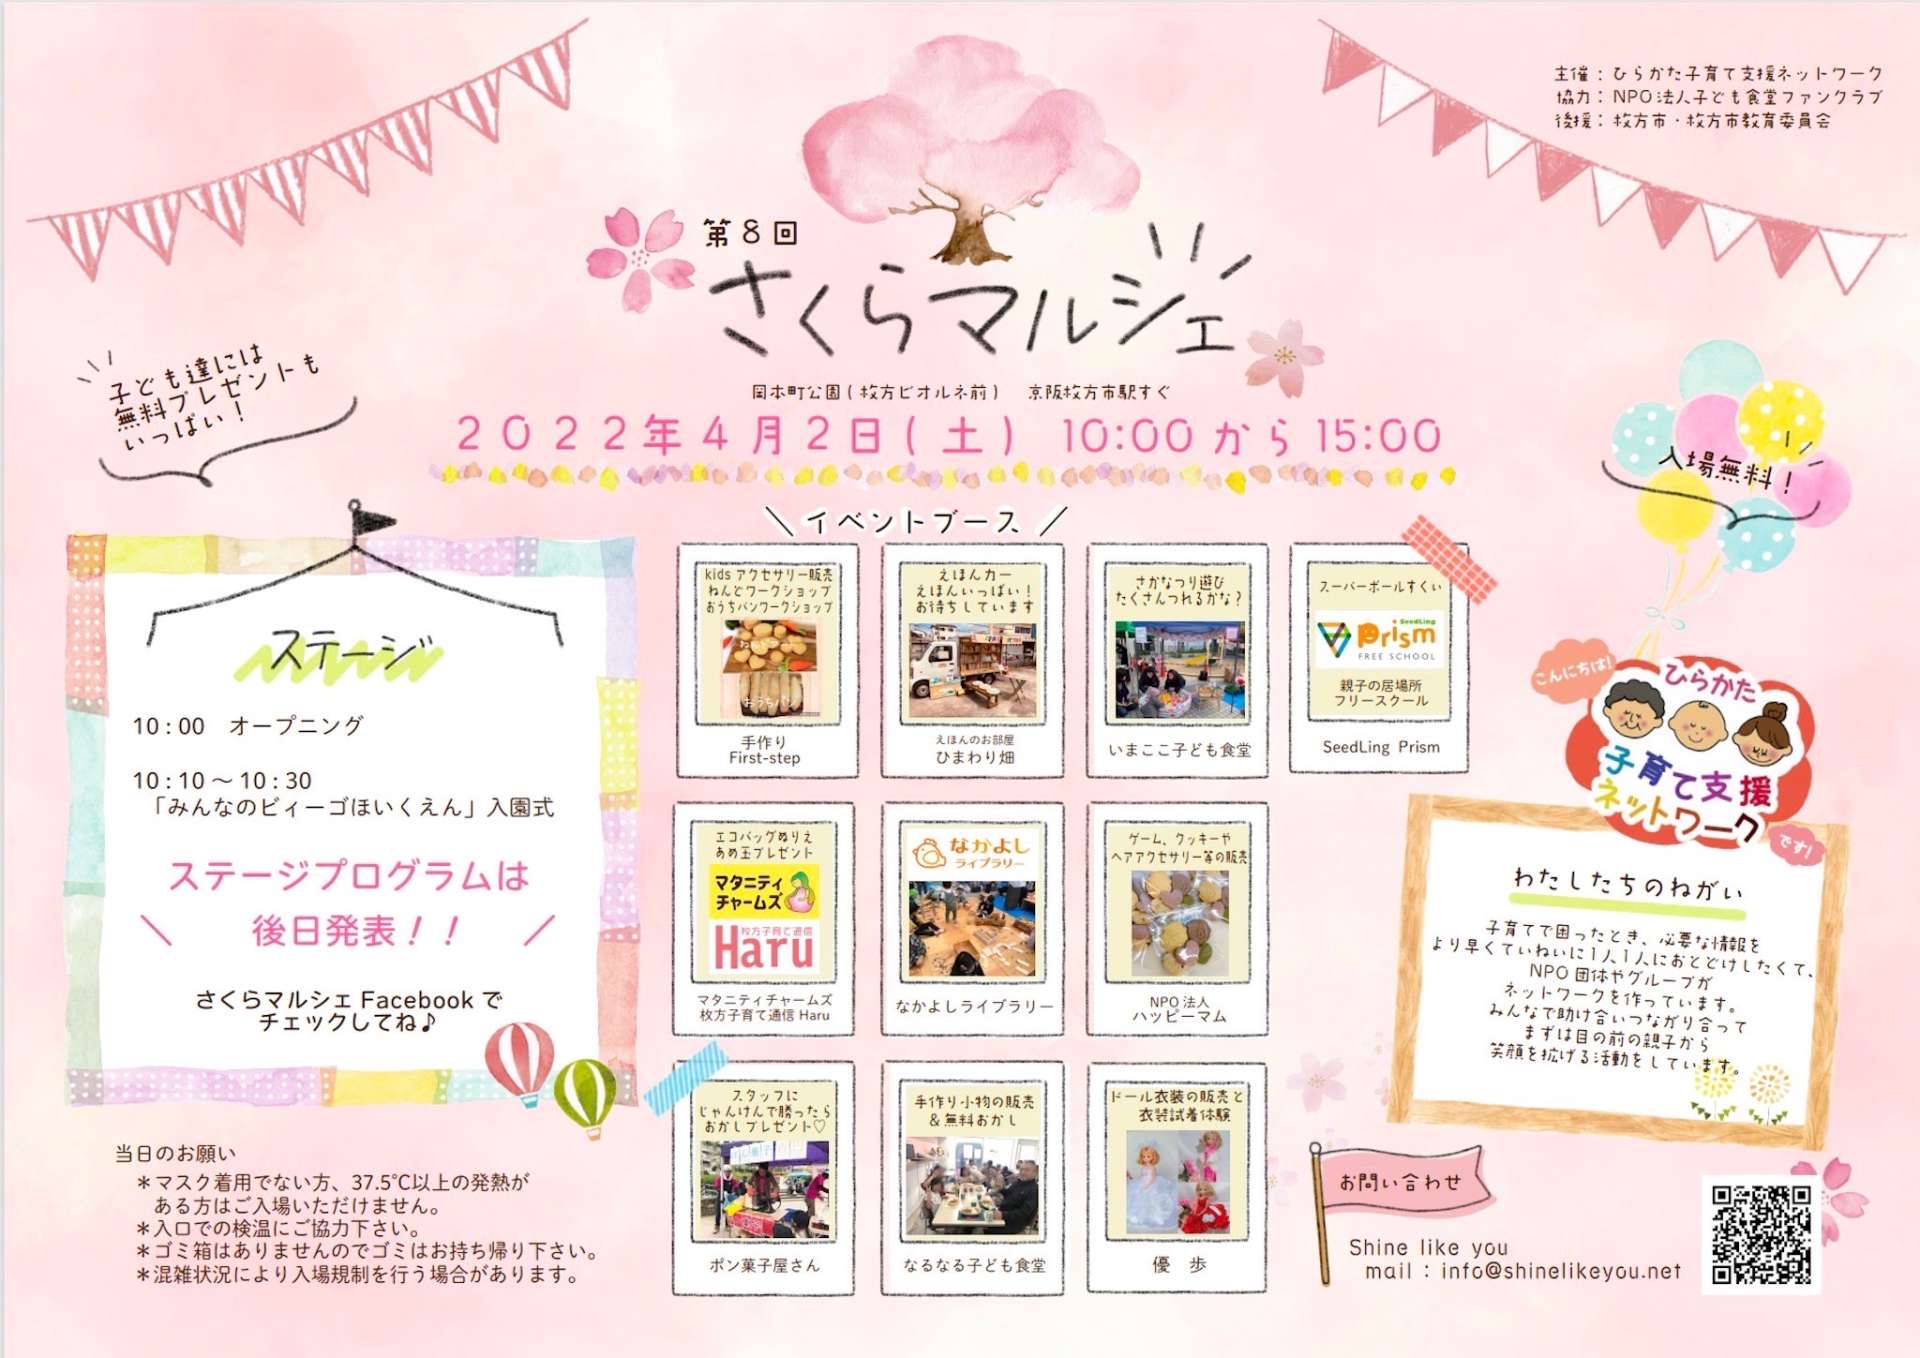 枚方市で開催される親子のためのイベント「さくらマルシェ」に出店します